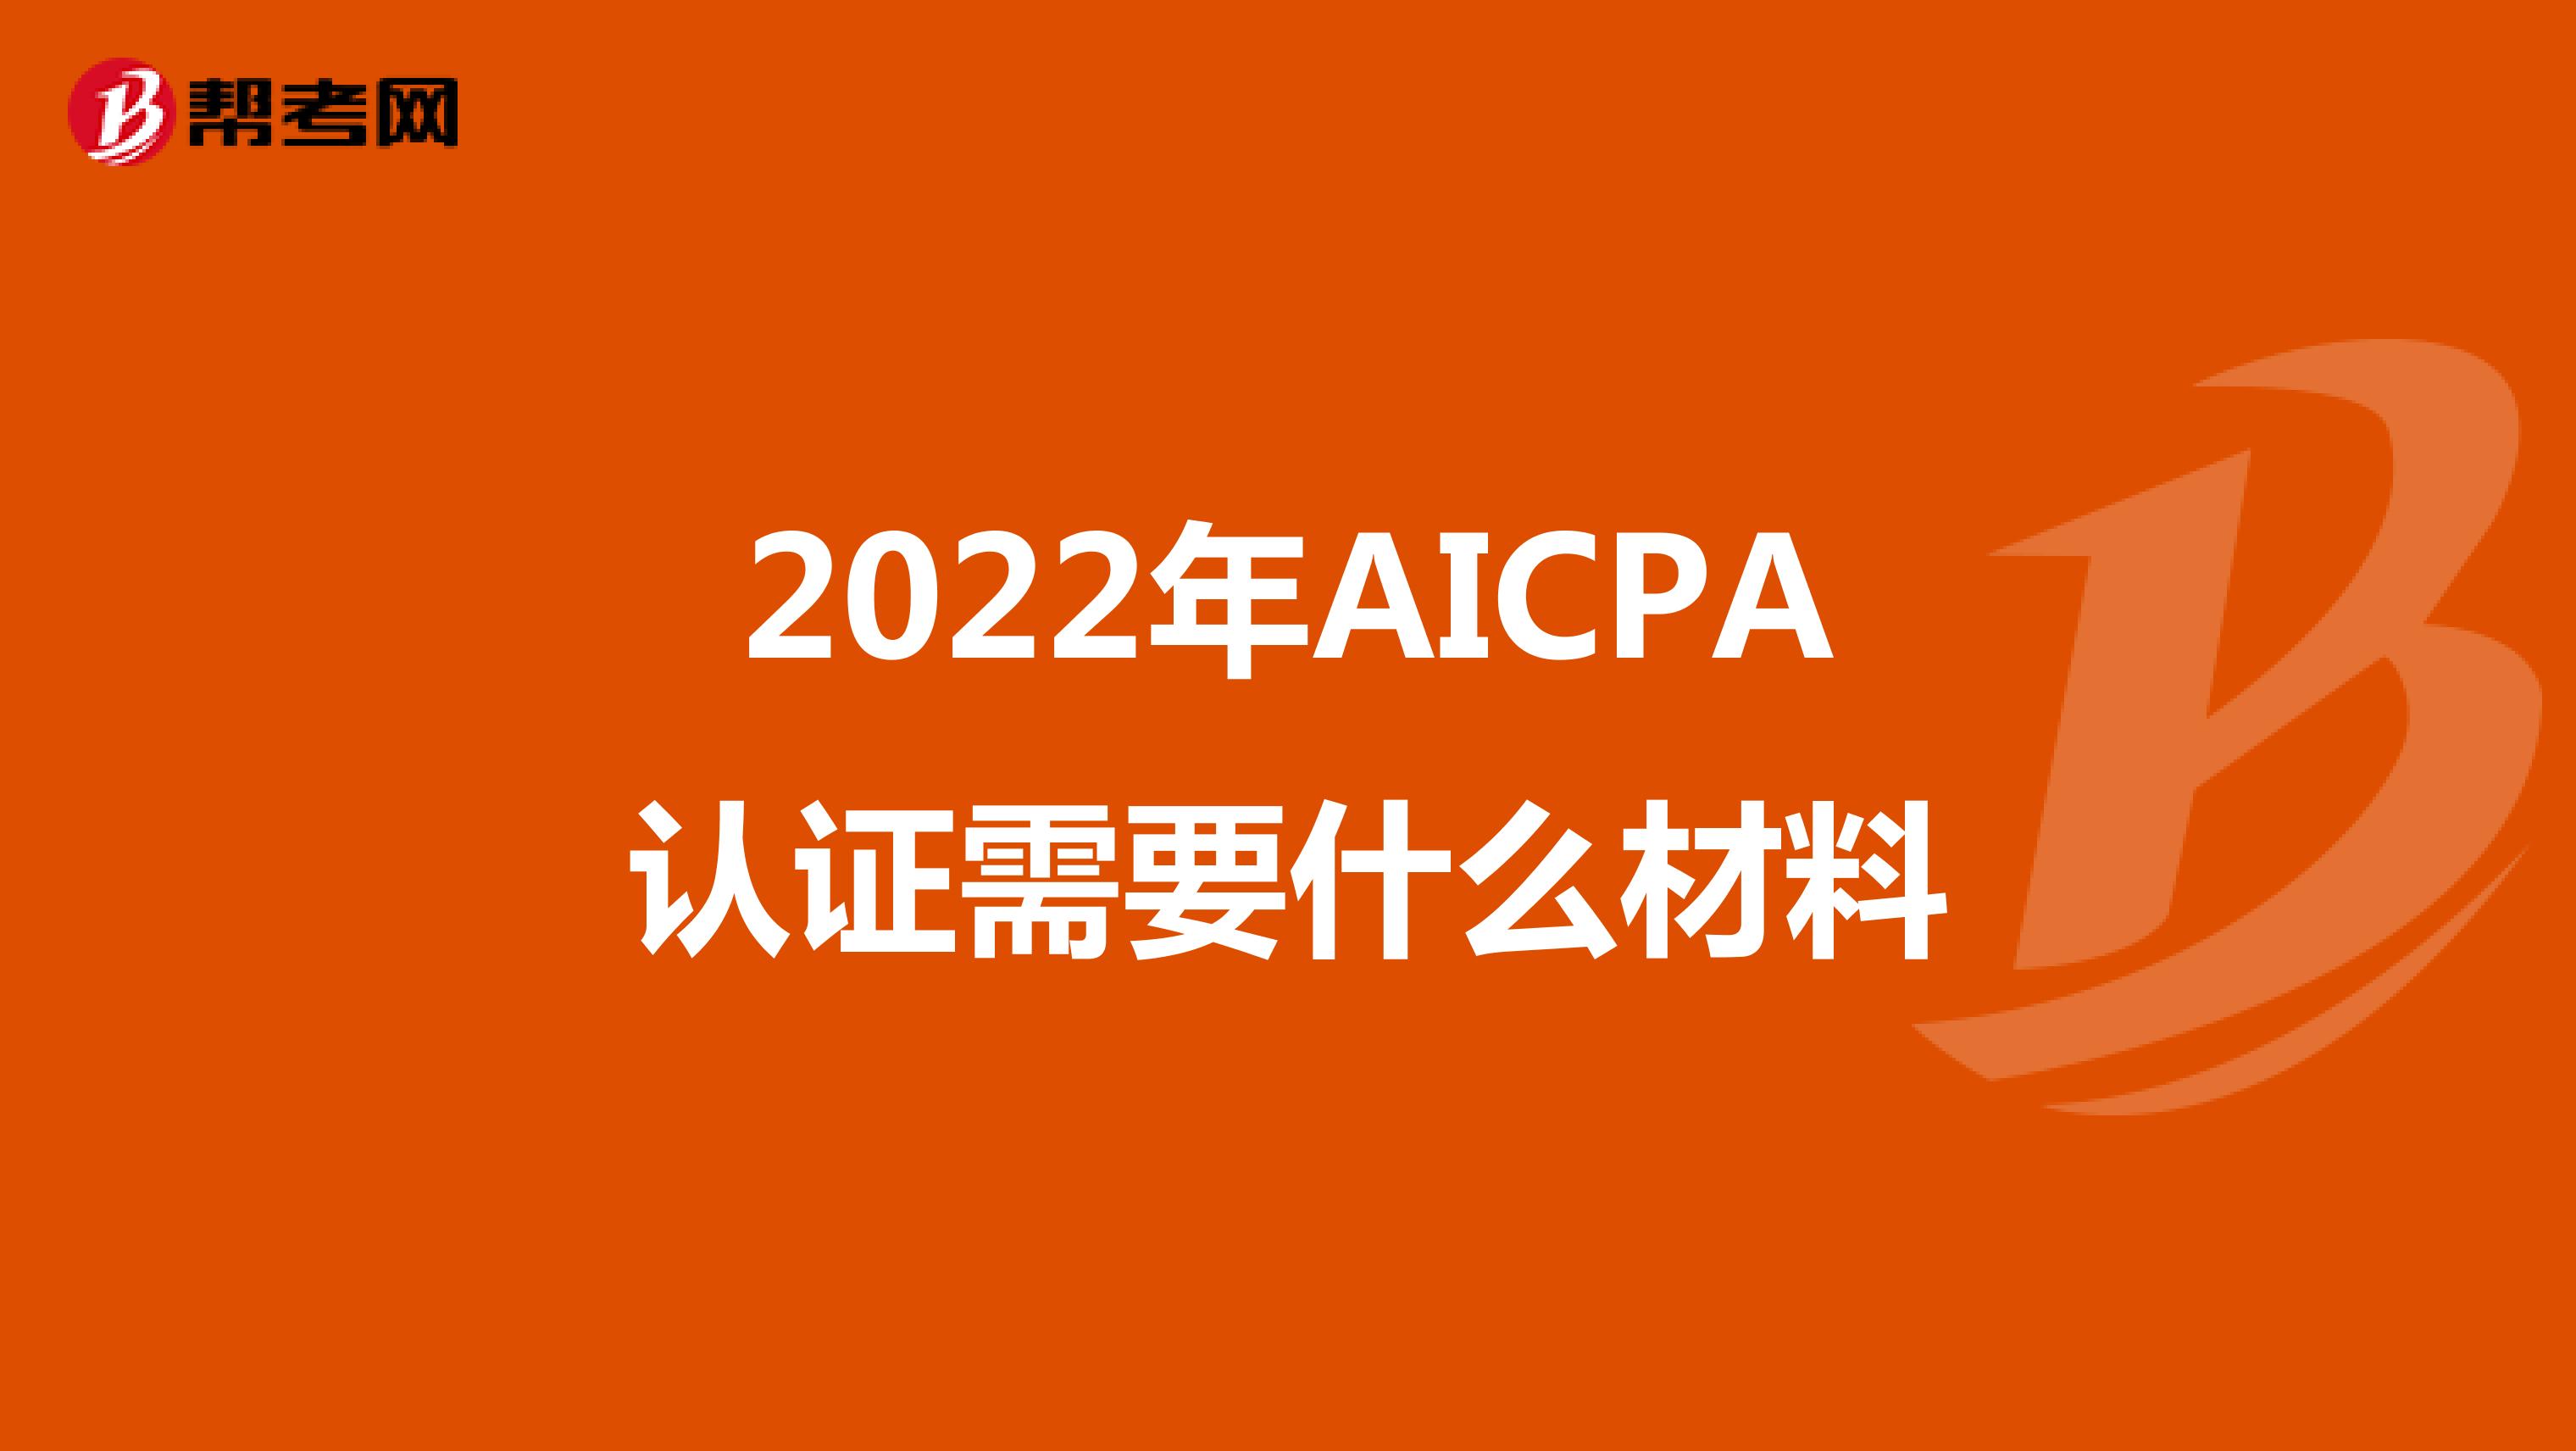 2022年AICPA认证需要什么材料